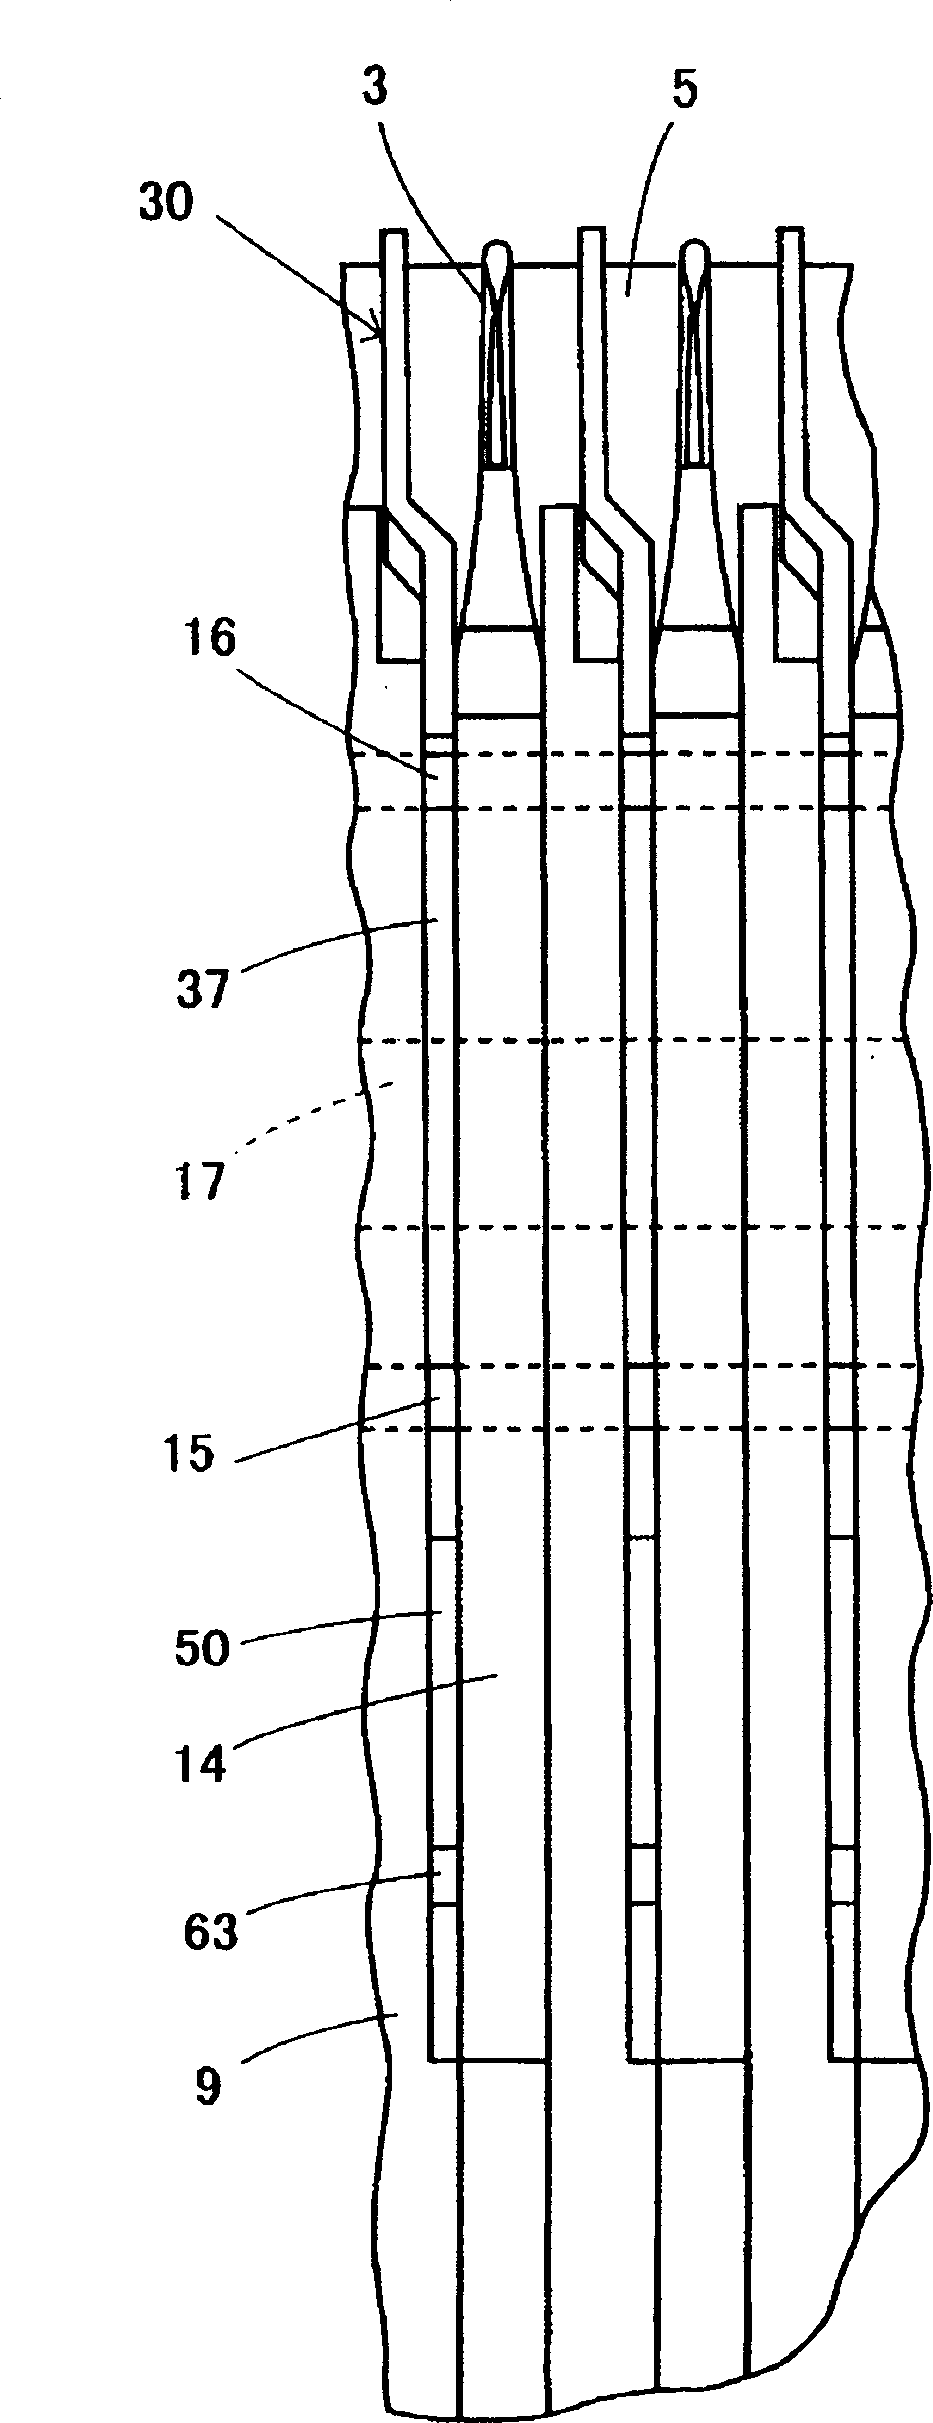 Sinker device of flat knitting machine